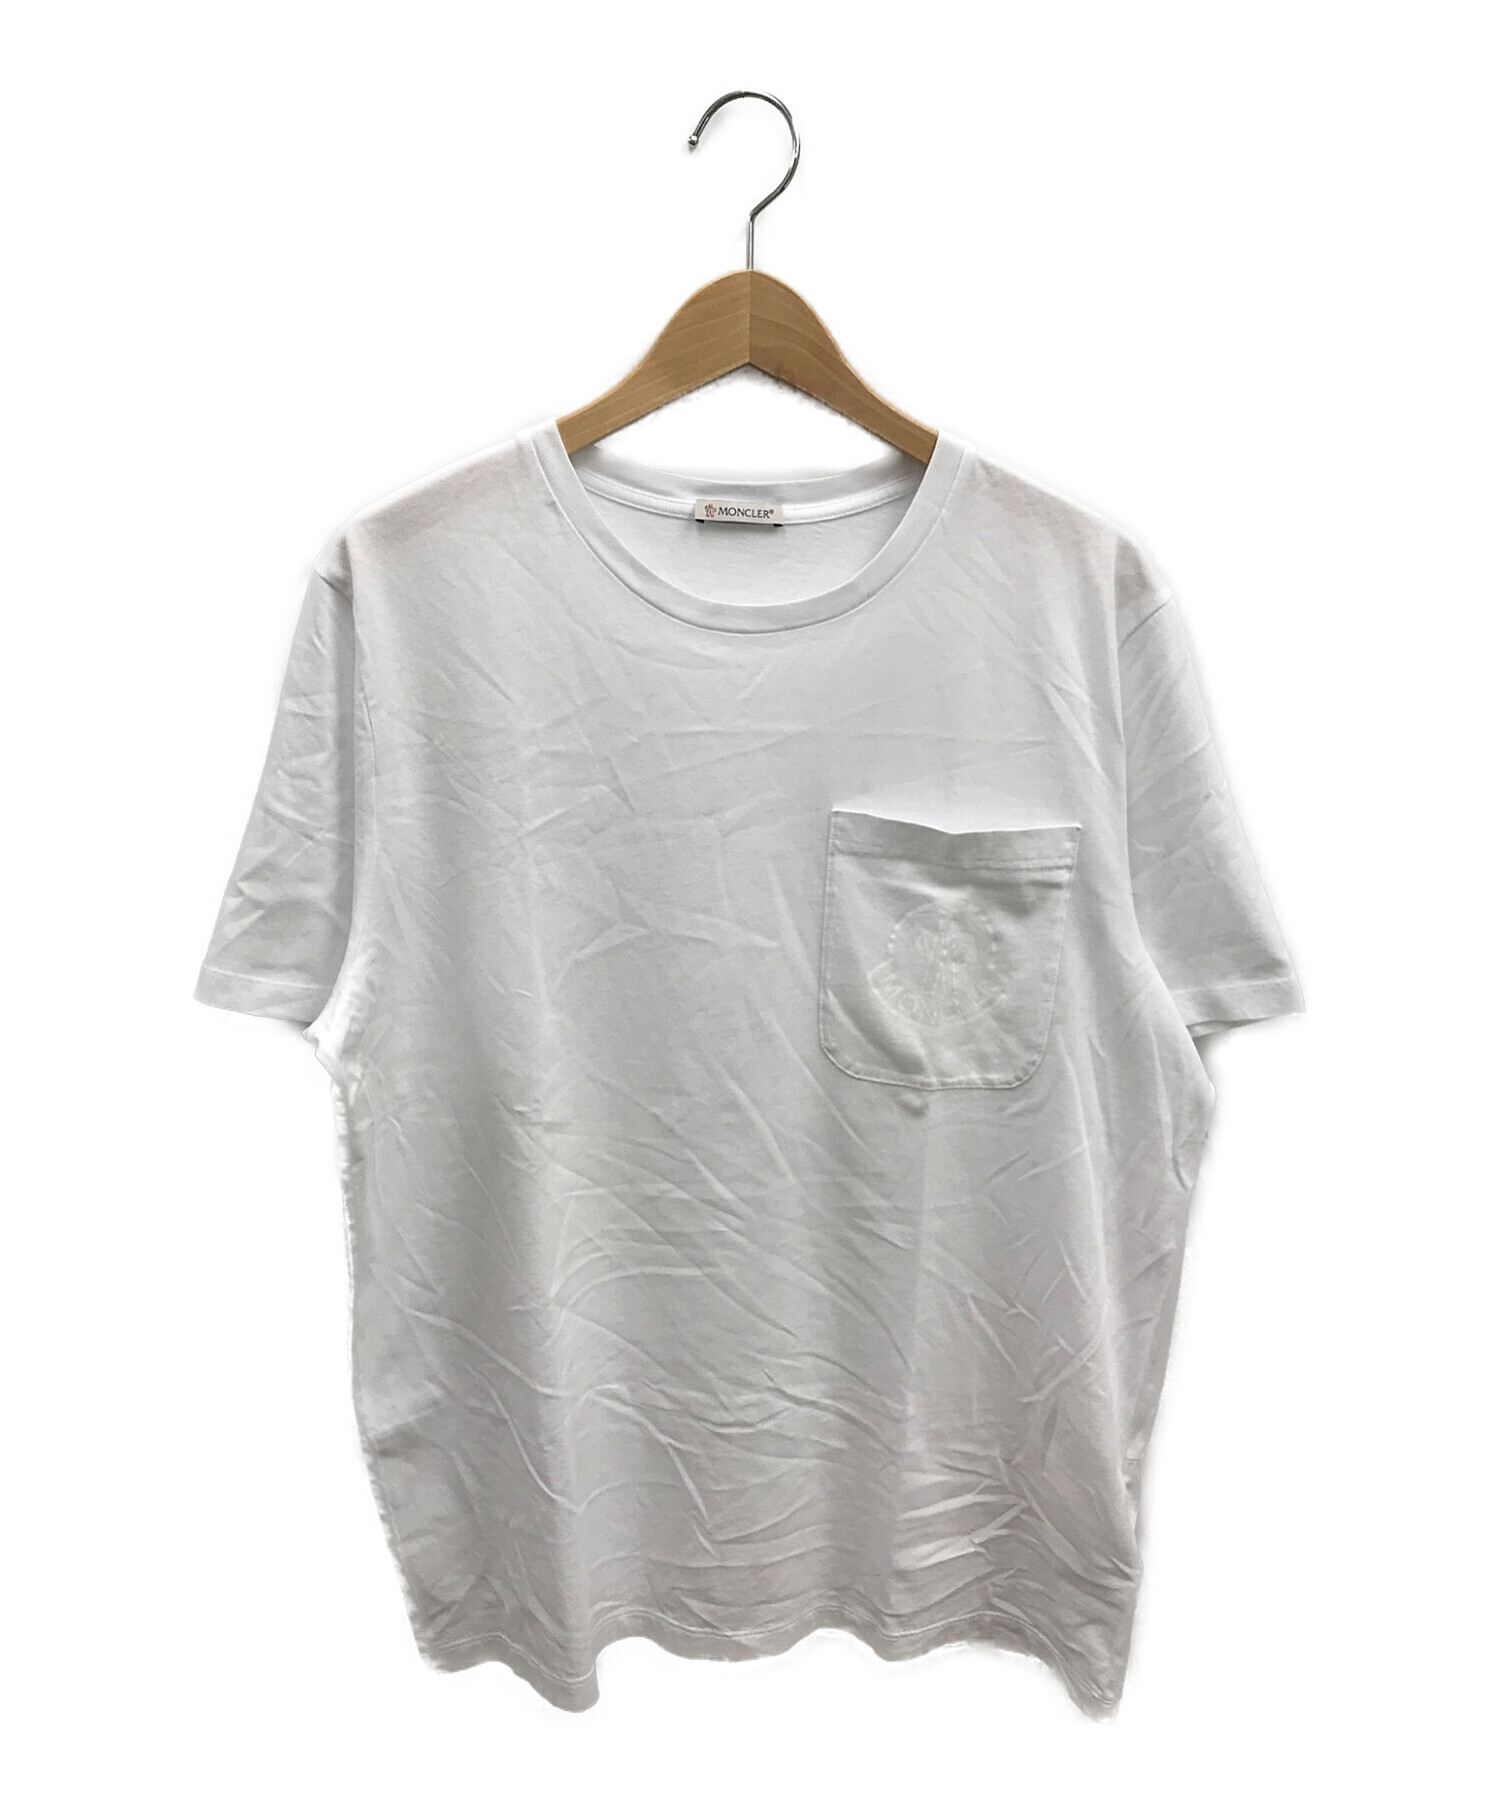 MONCLER (モンクレール) MAGLIA T-SHIRT / ポケットロゴTシャツ / ポケットTシャツ ホワイト サイズ:M